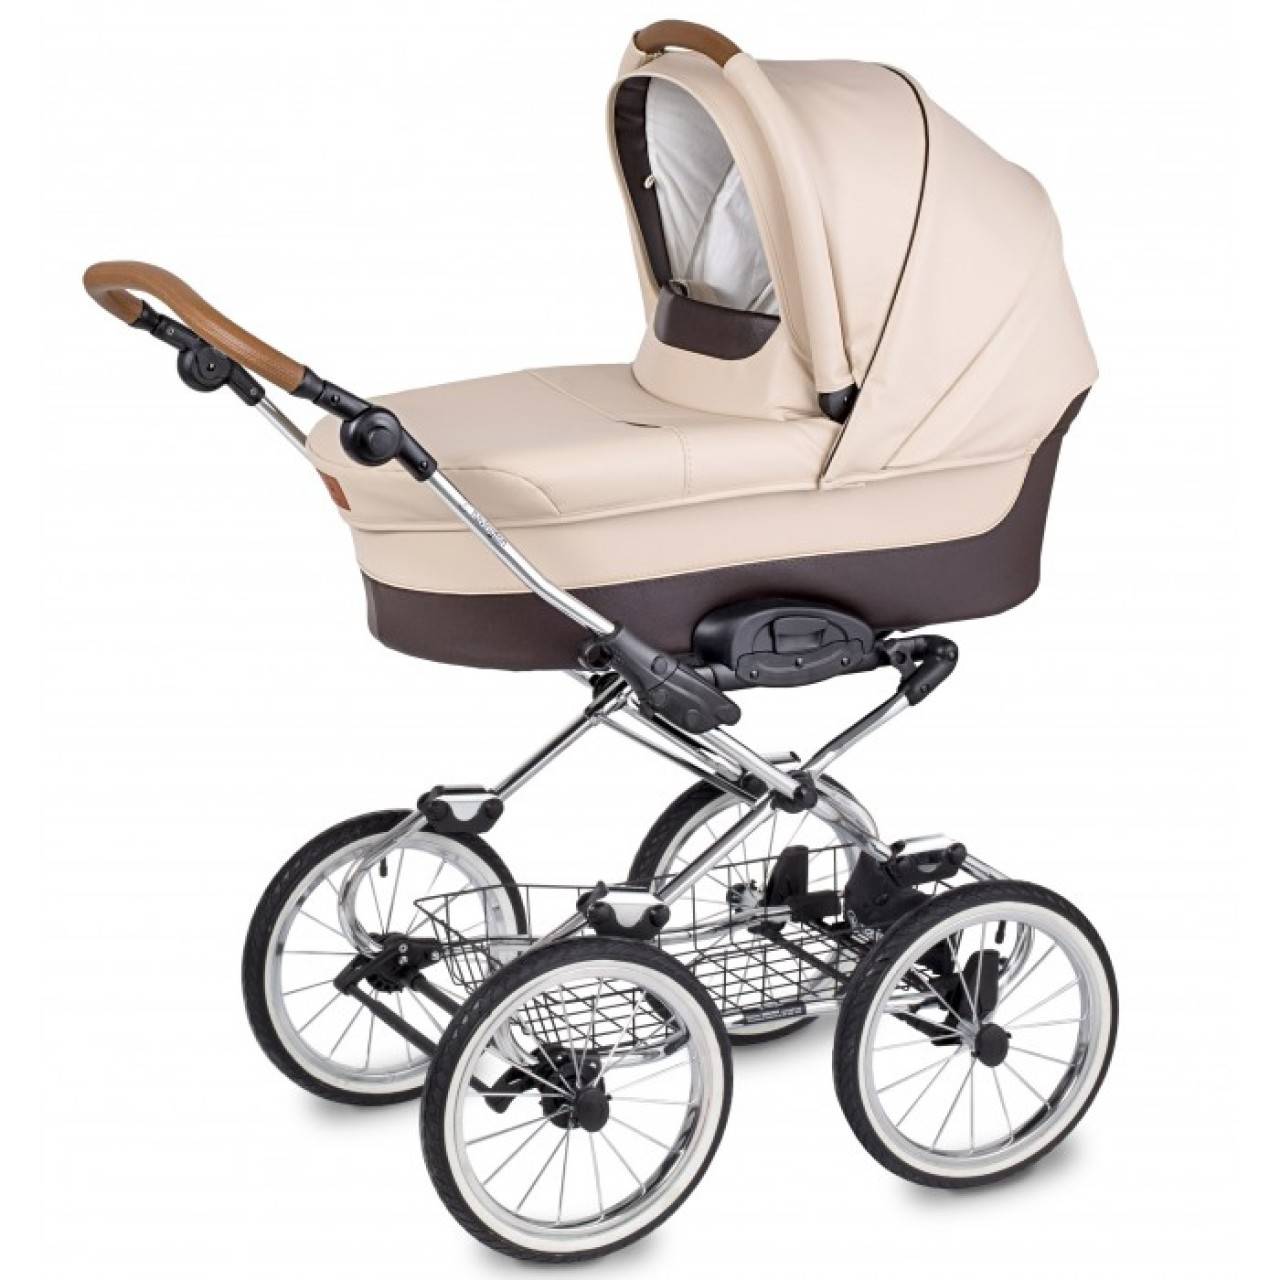 Выбираем хорошую коляску для новорожденного ребенка - толк 03.05.2021